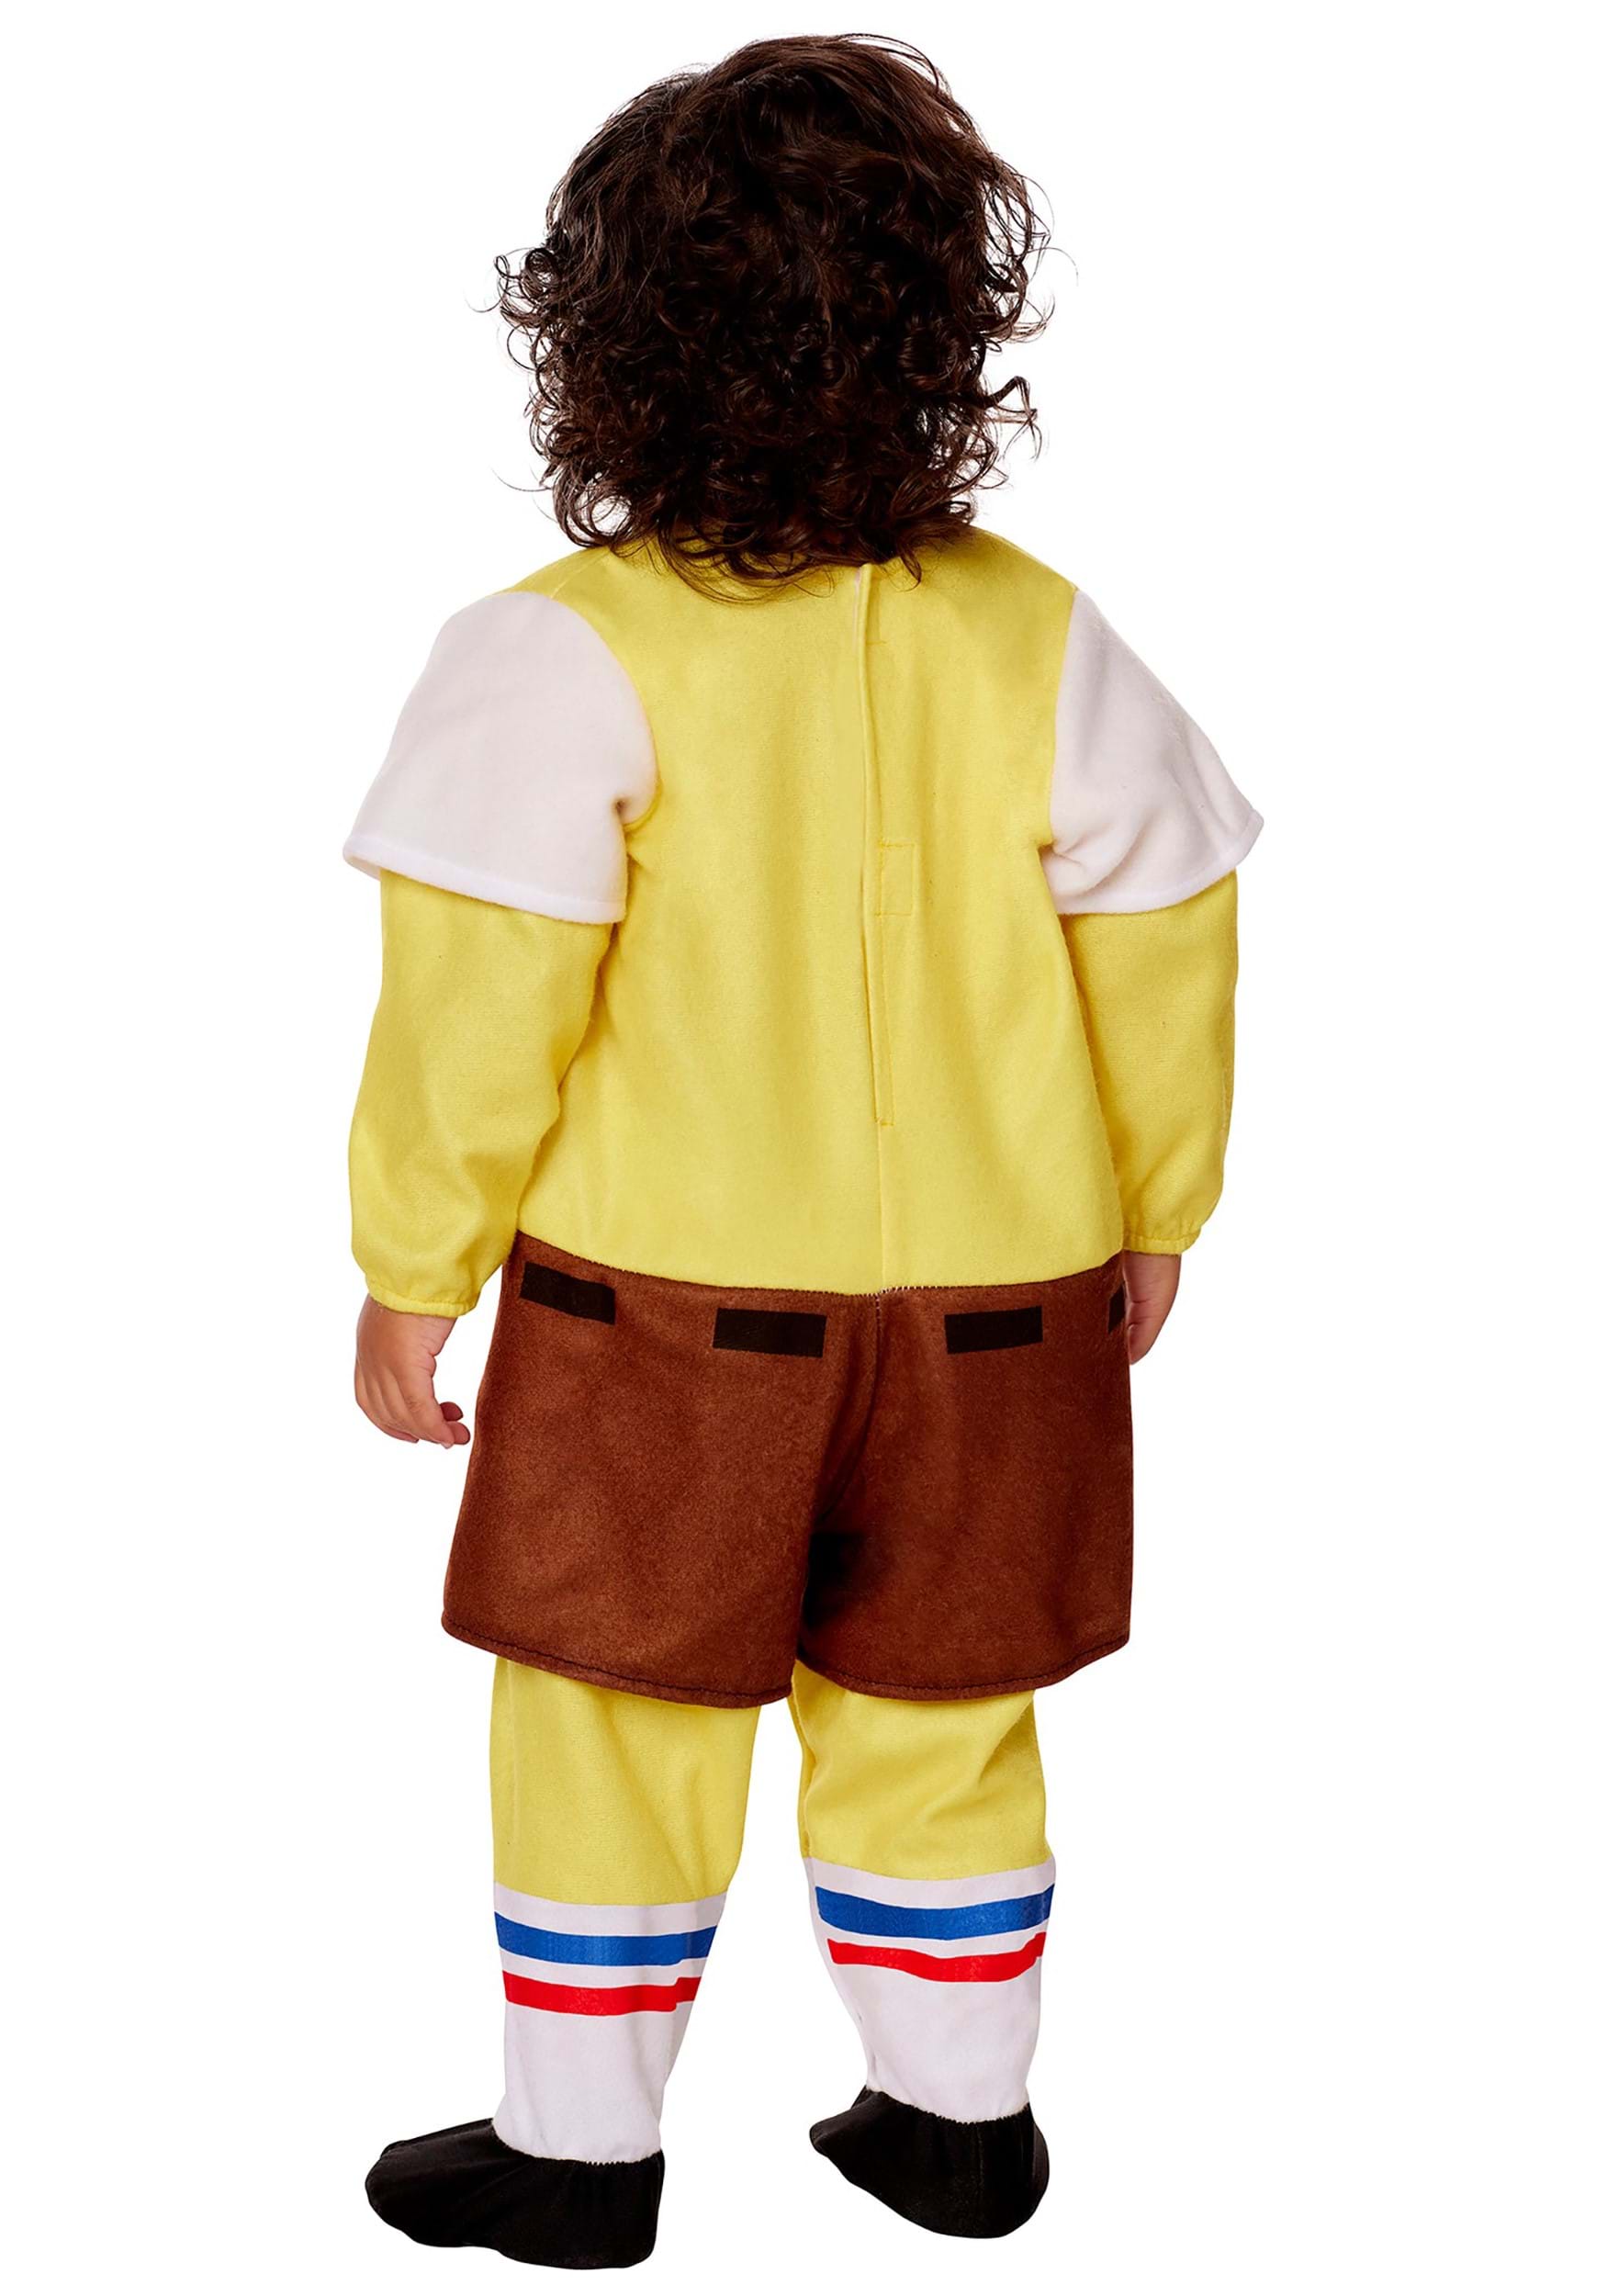 SpongeBob SquarePants Infant Costume